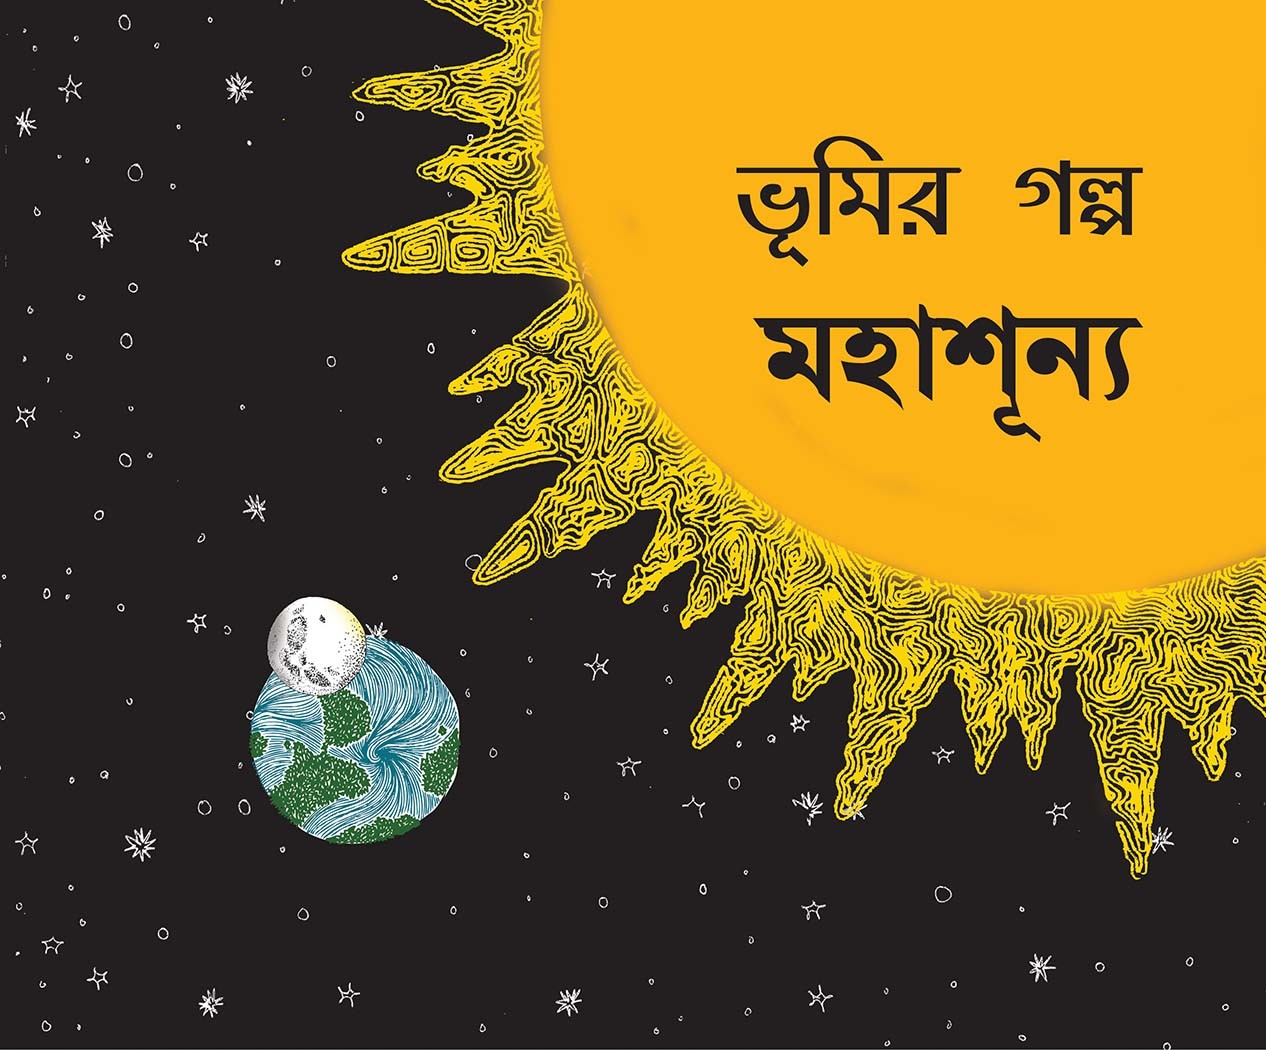 Bhoomi's Story-Space/Bhoomir Golpo-Mohashunno (Bengali)